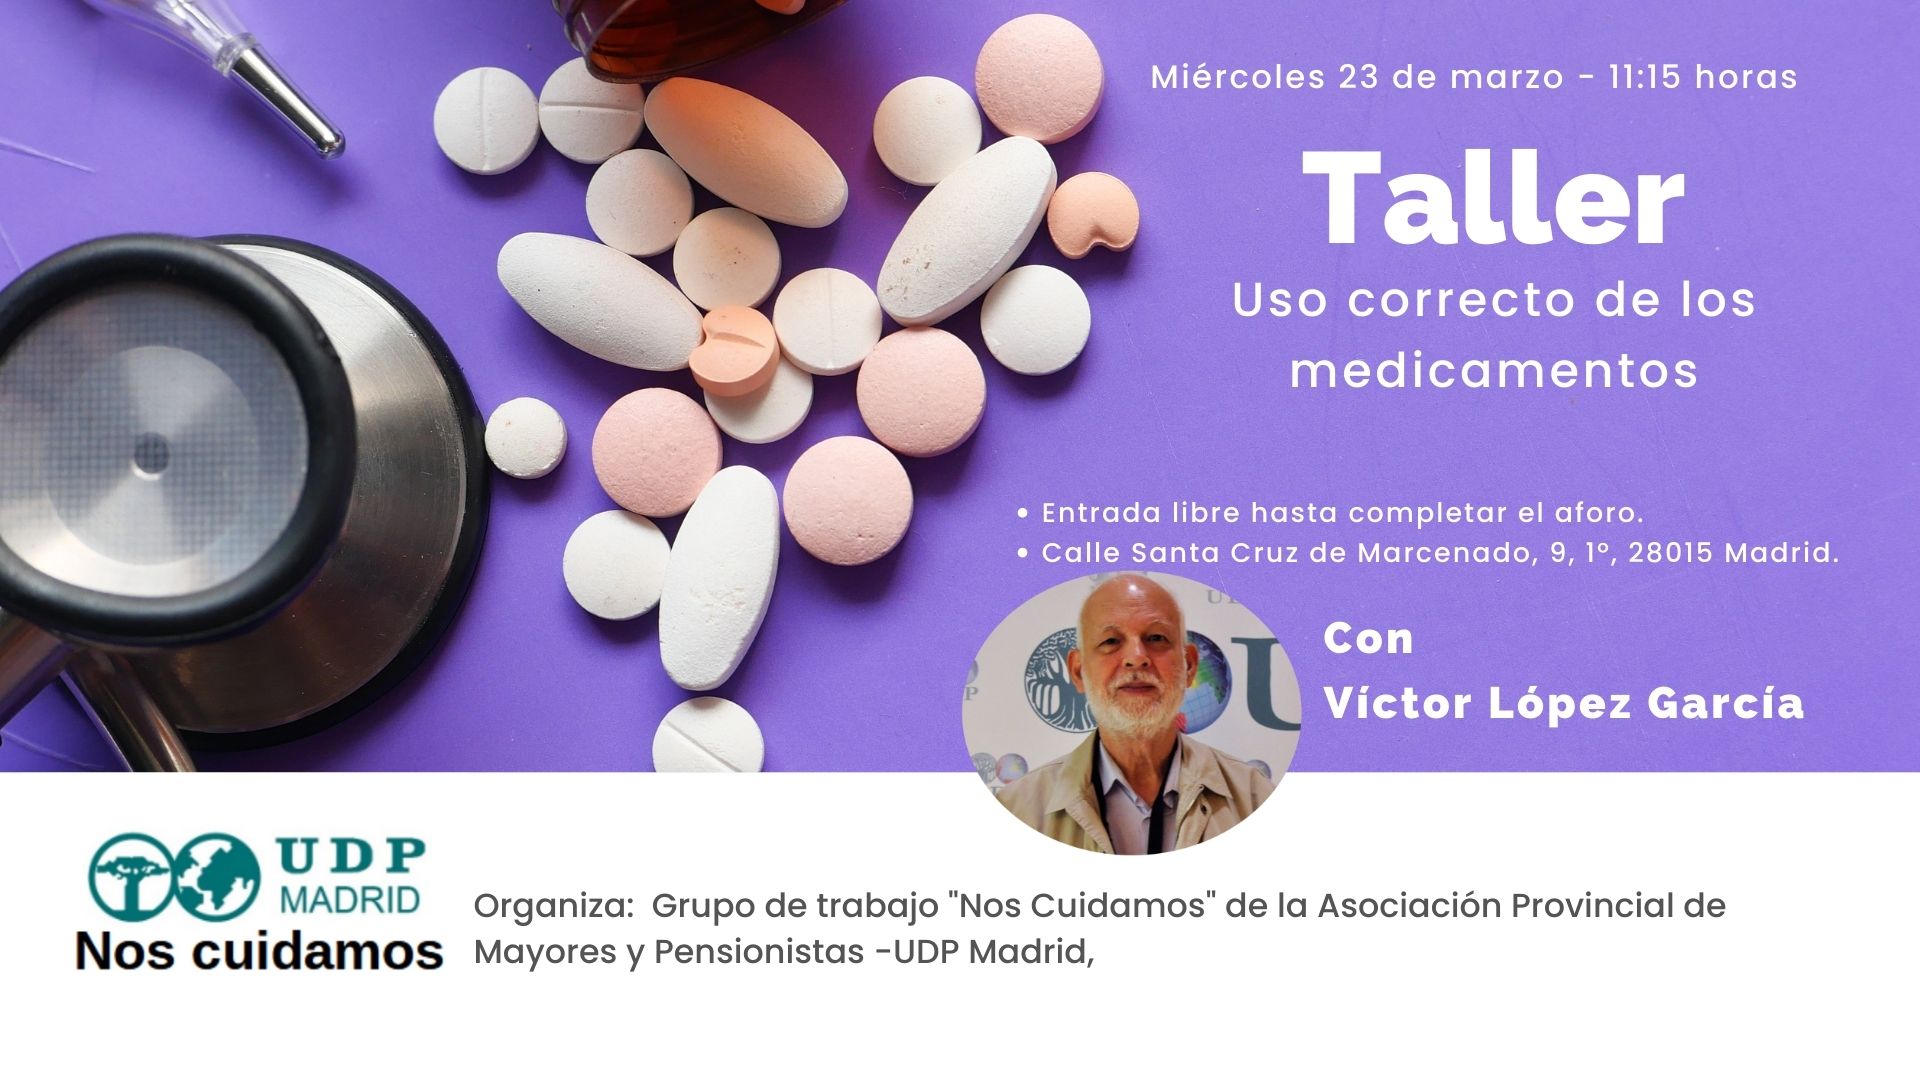 Taller: Uso correcto de los medicamentos, impartido por Víctor López García